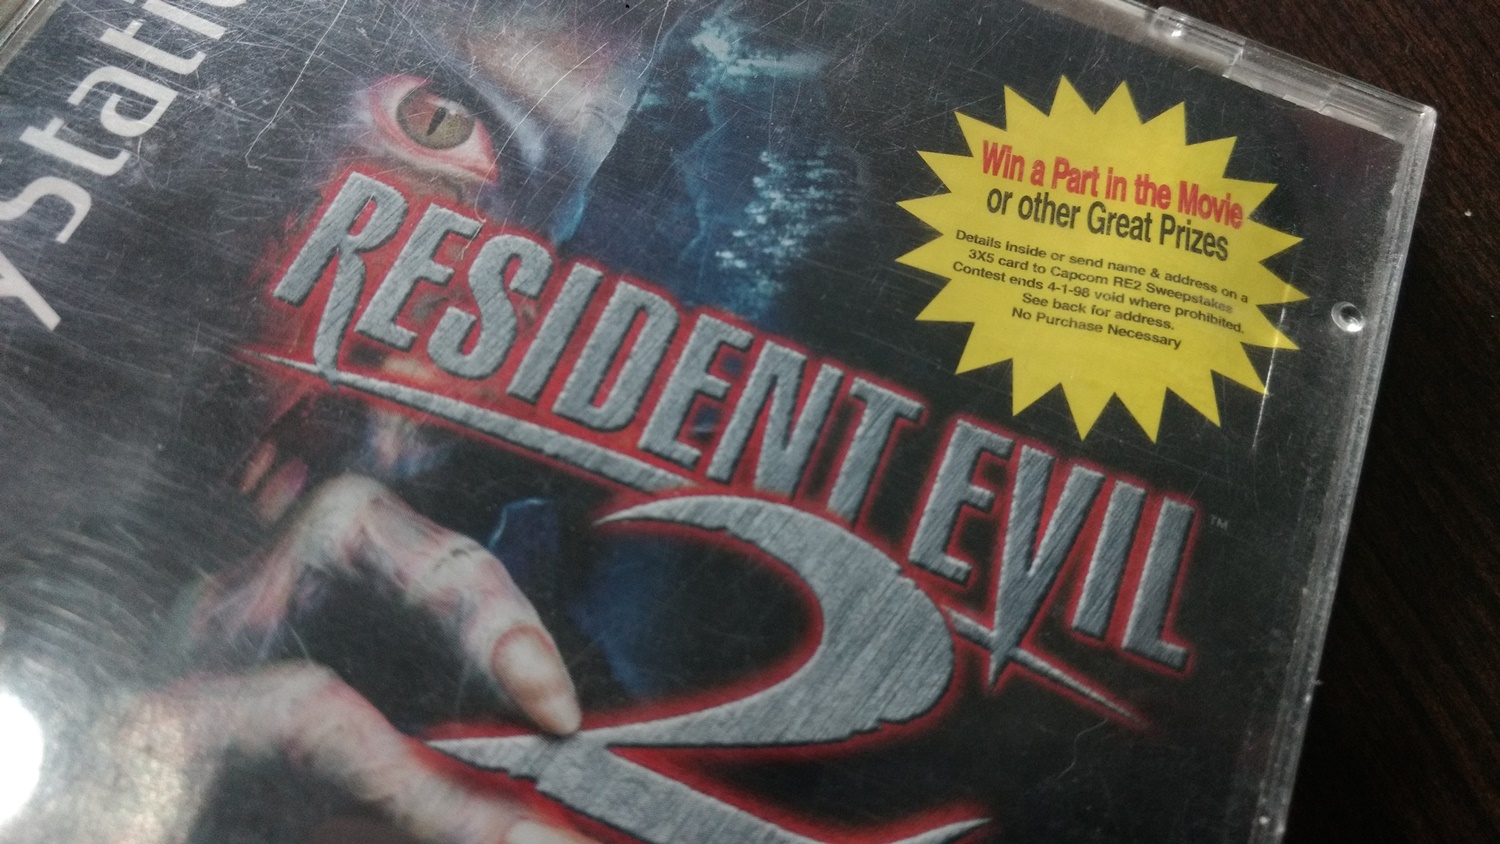 Novo filme de Resident Evil pode estar sendo produzido - Canaltech